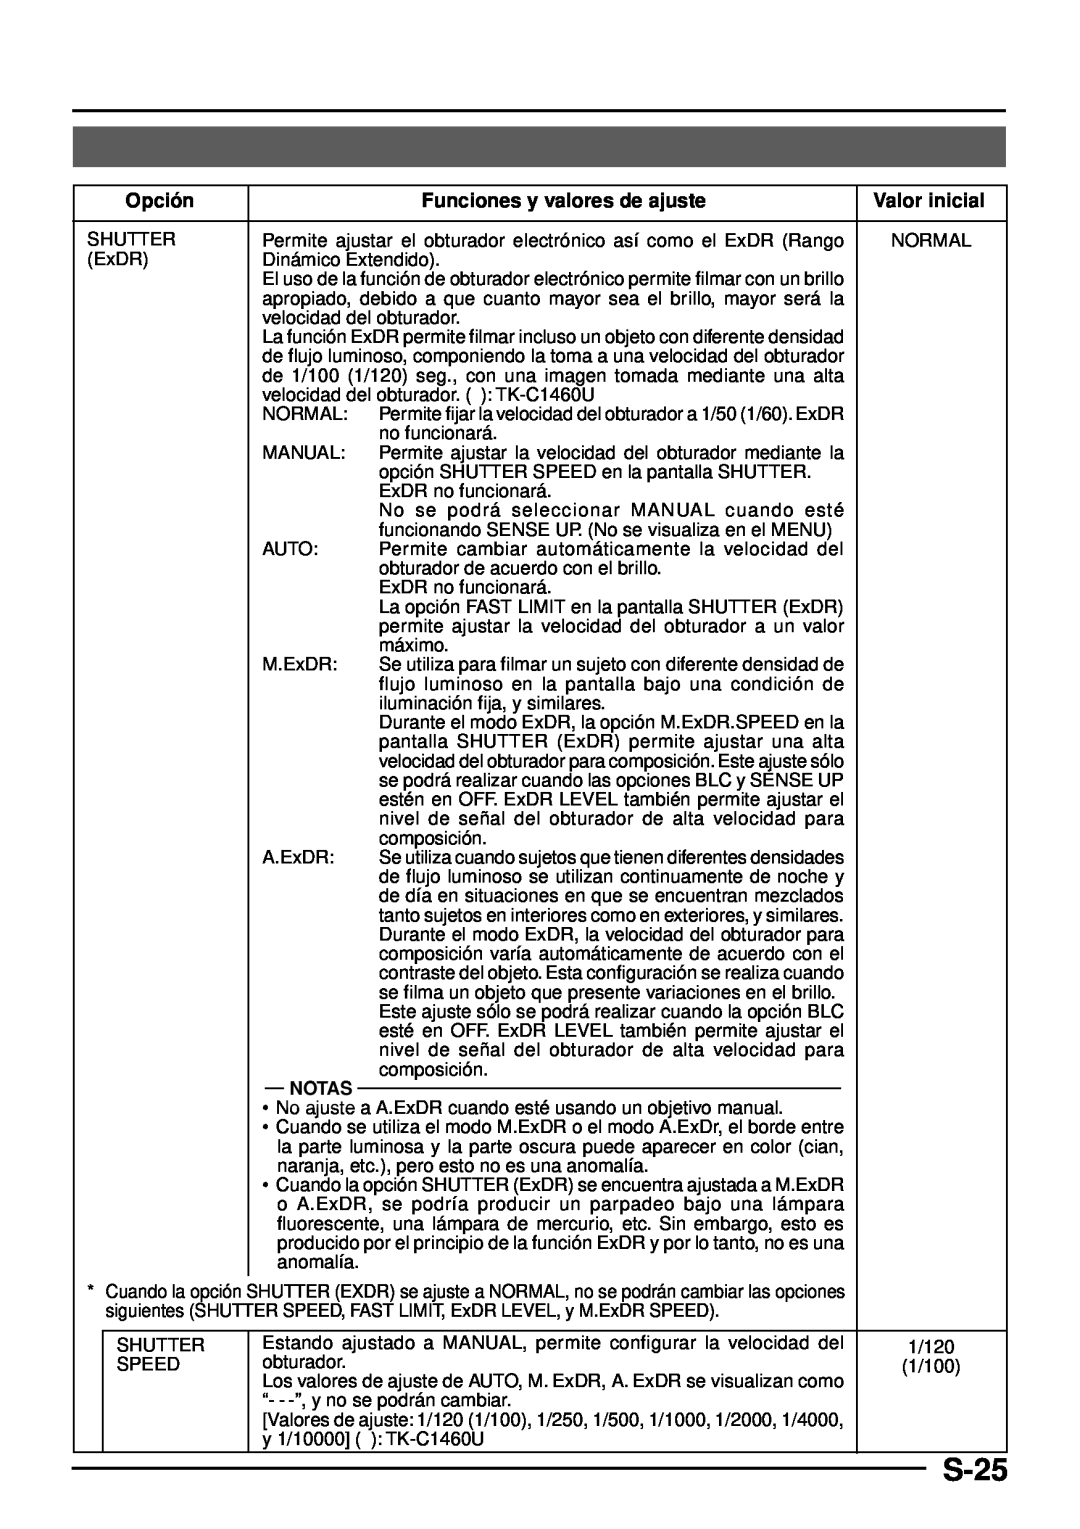 JVC TK-C1460 manual S-25, Opció n, Funciones y valores de ajuste, Notas 